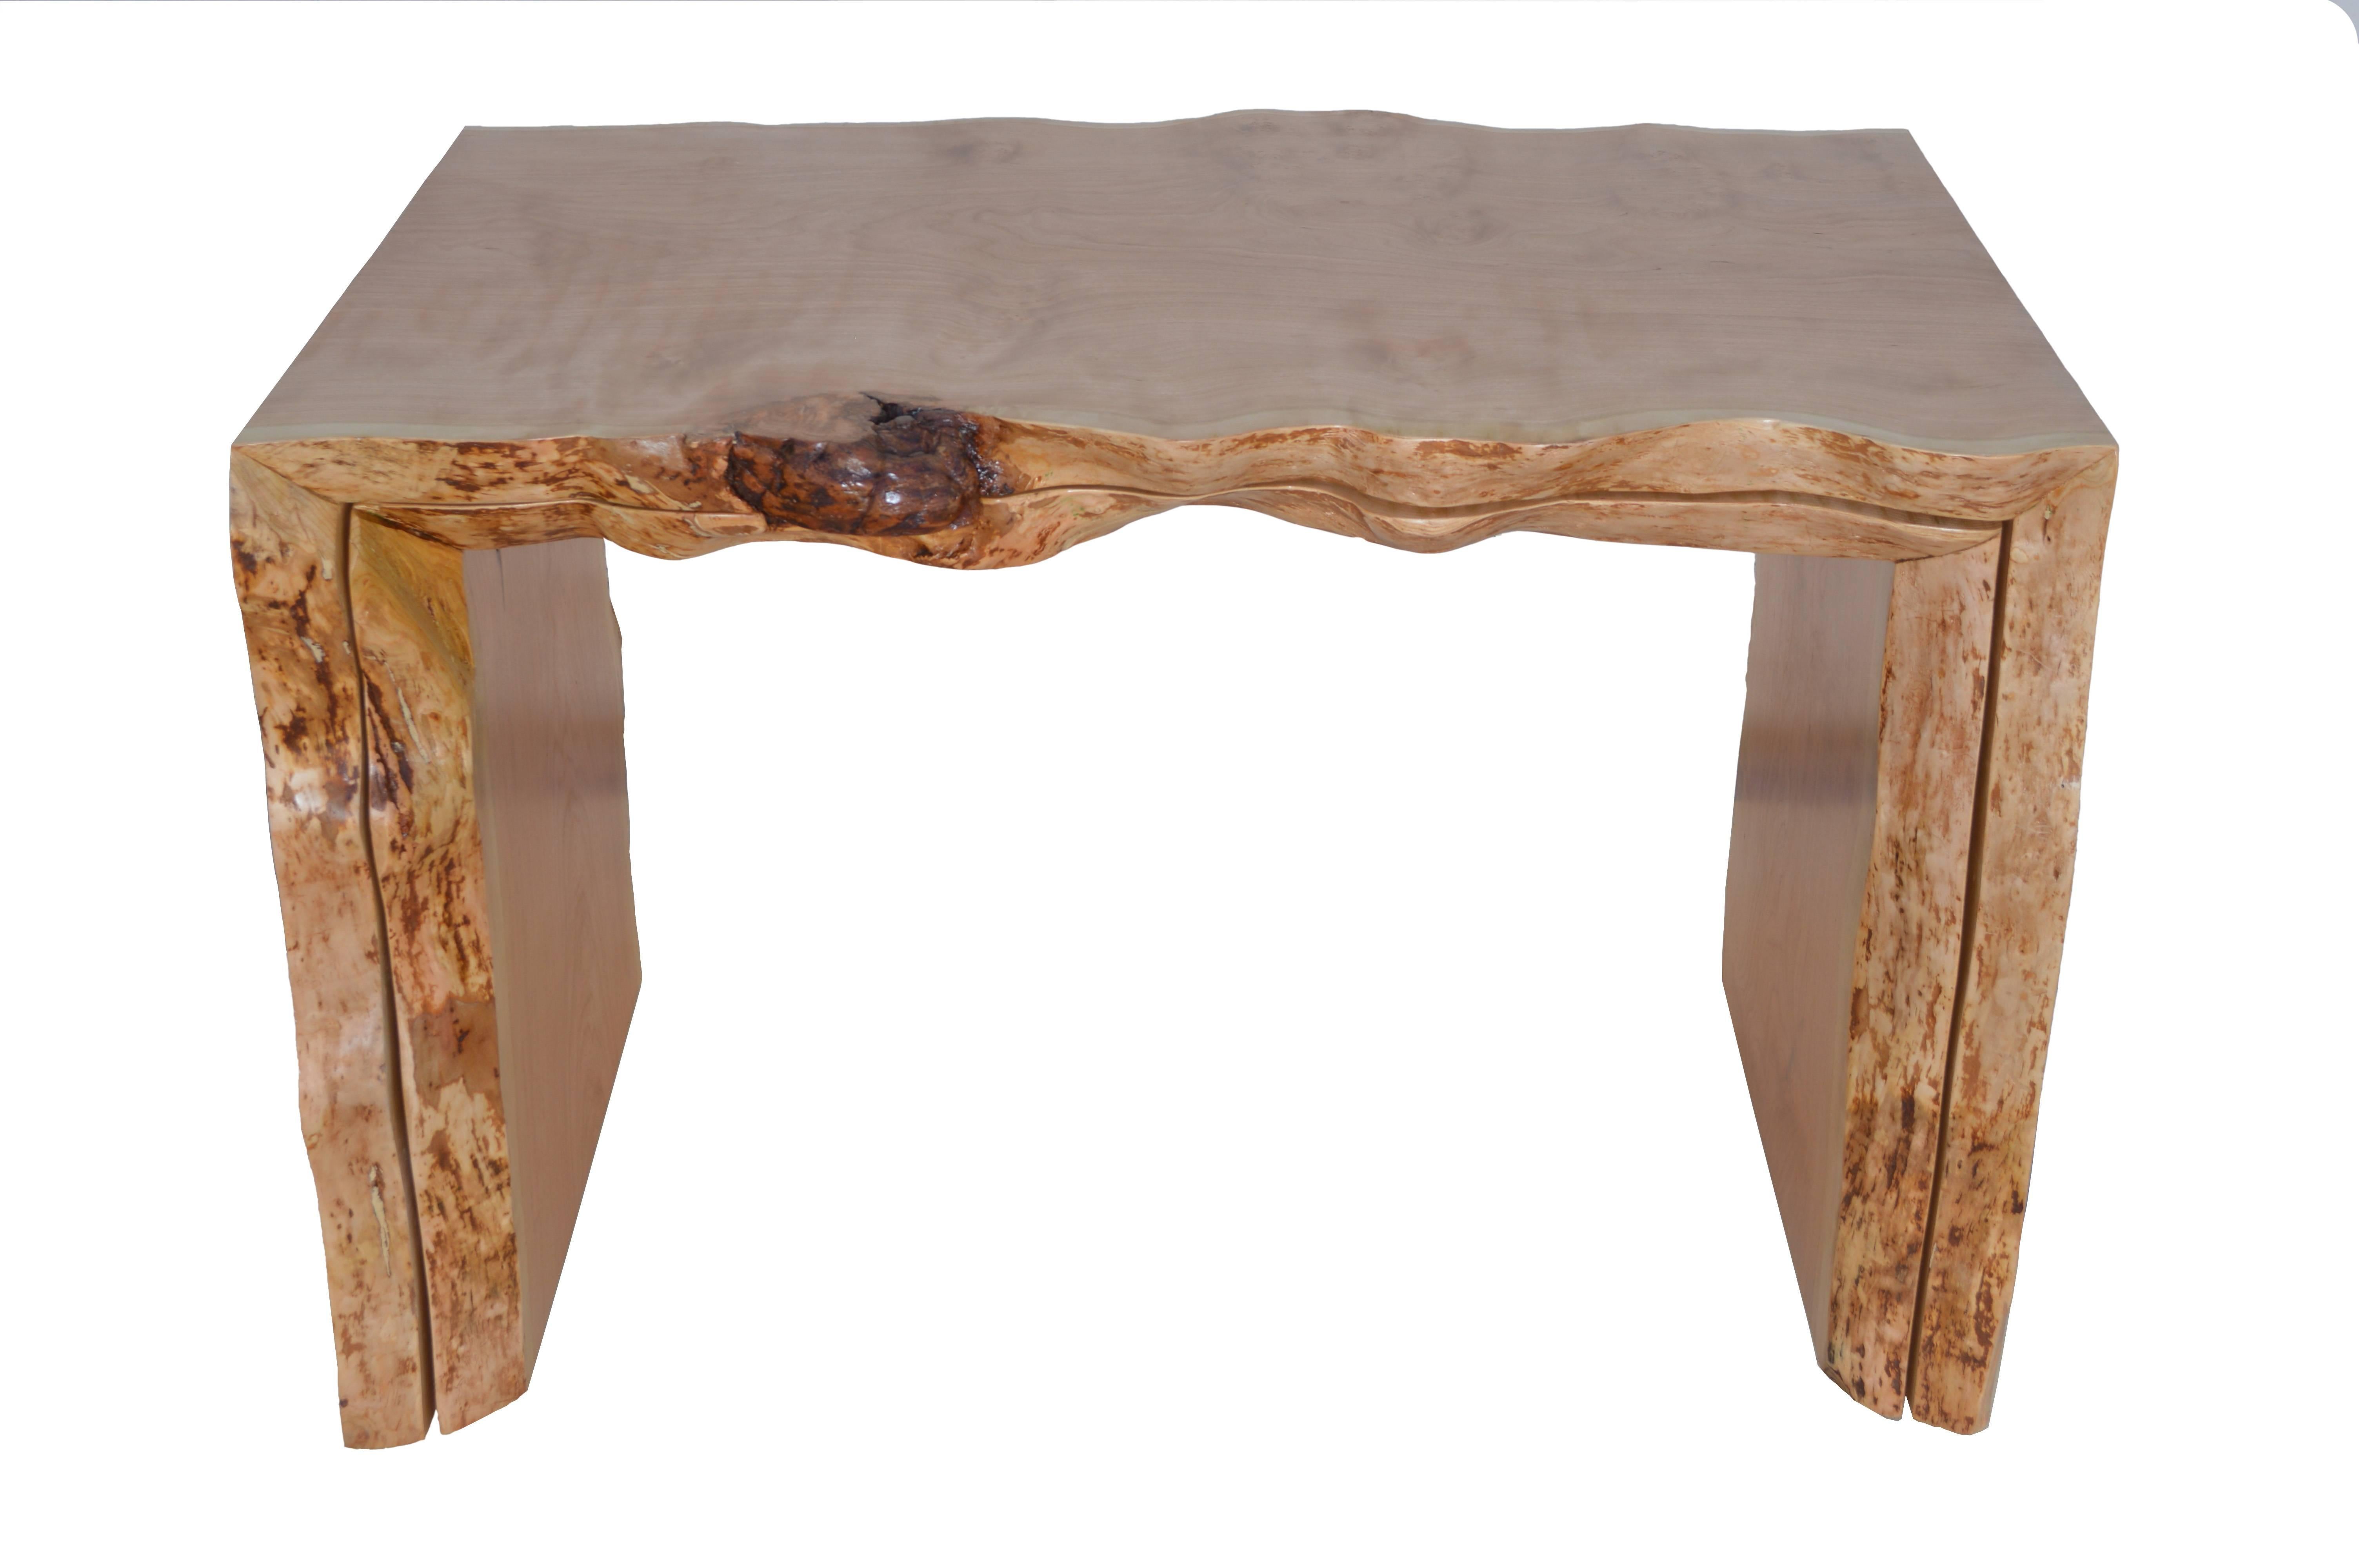 C'est un exemple du type de meubles sculpturaux que nous aimons construire. Cette table gigogne est créée à partir d'une seule pièce de bois de cerisier, avec tous ses défauts ! Nous avons conçu ce bureau pour qu'il puisse s'étendre lorsque cela est